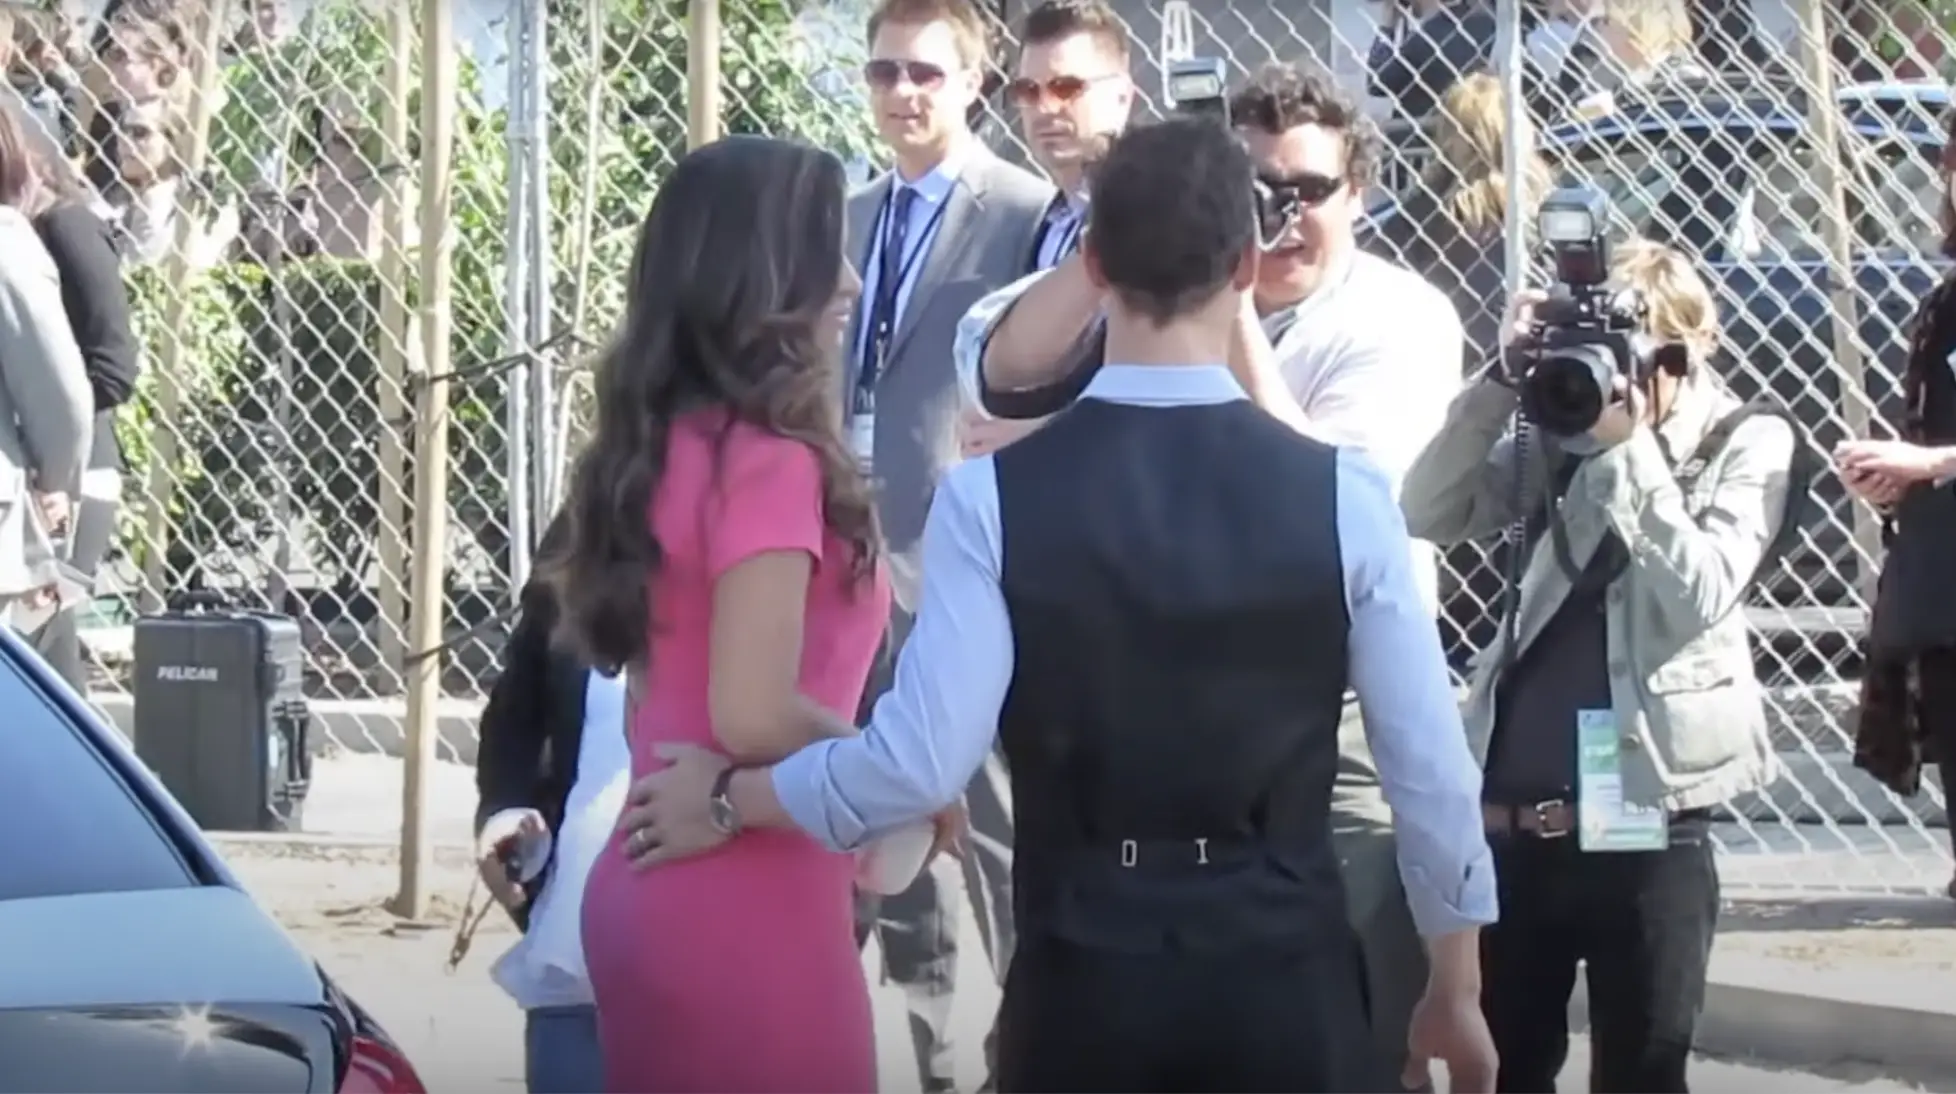 Camila Alves McConaughey y su marido Matthew McConaughey llegando a un evento en Los Ángeles el 7 de julio de 2023 | Foto: YouTube/Celebrity WotNot